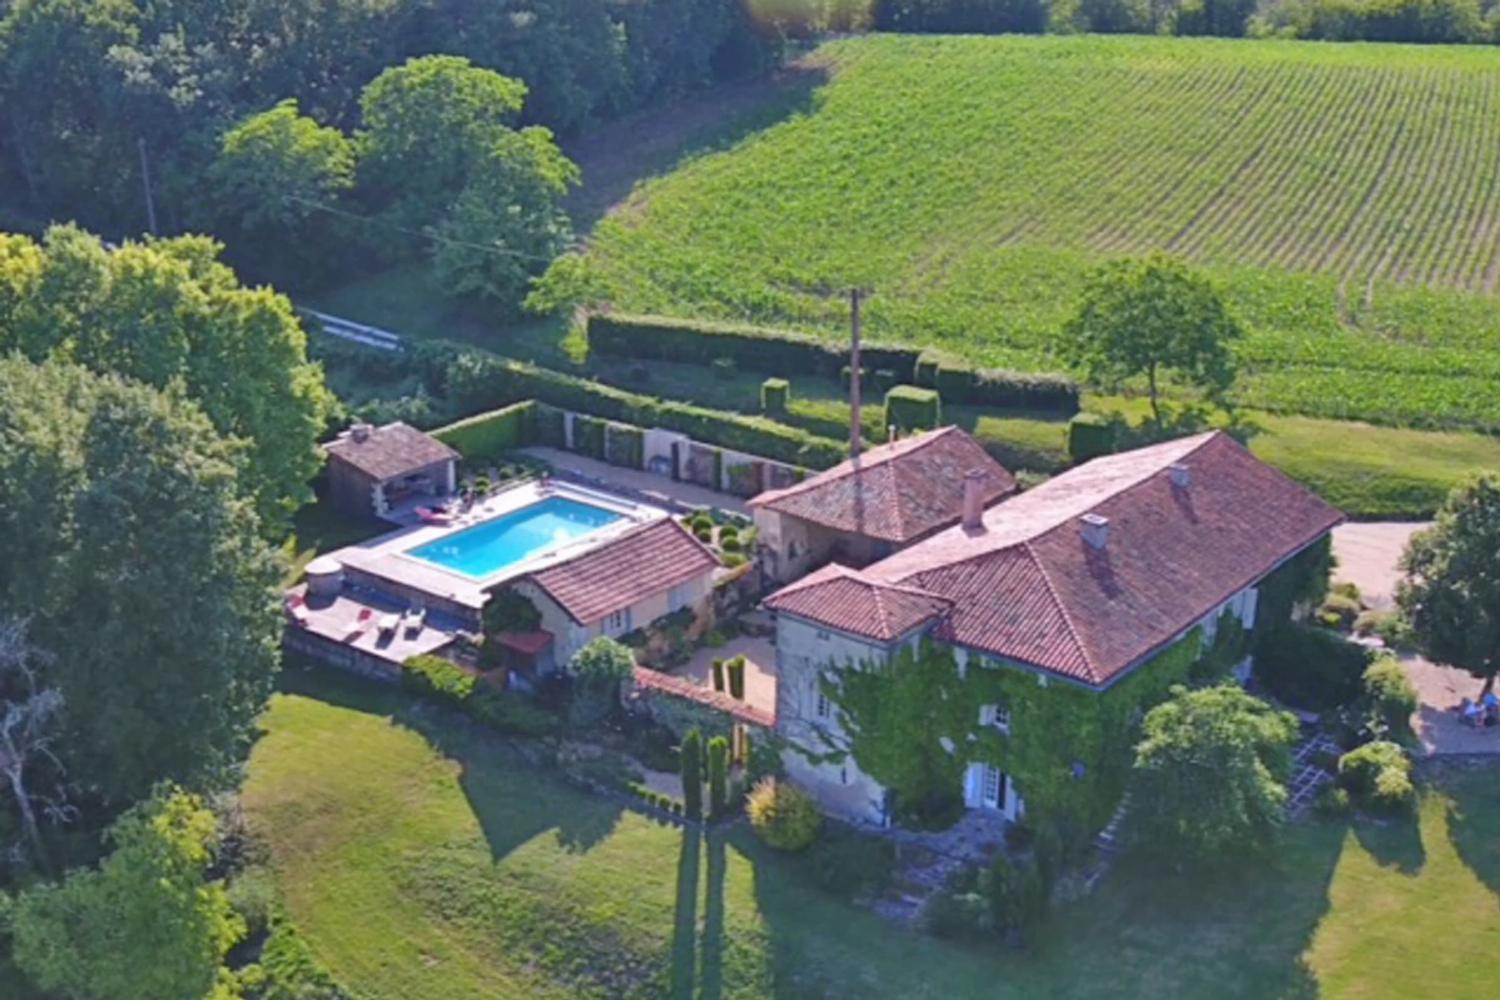 Location maison en Dordogne avec piscine privée chauffée